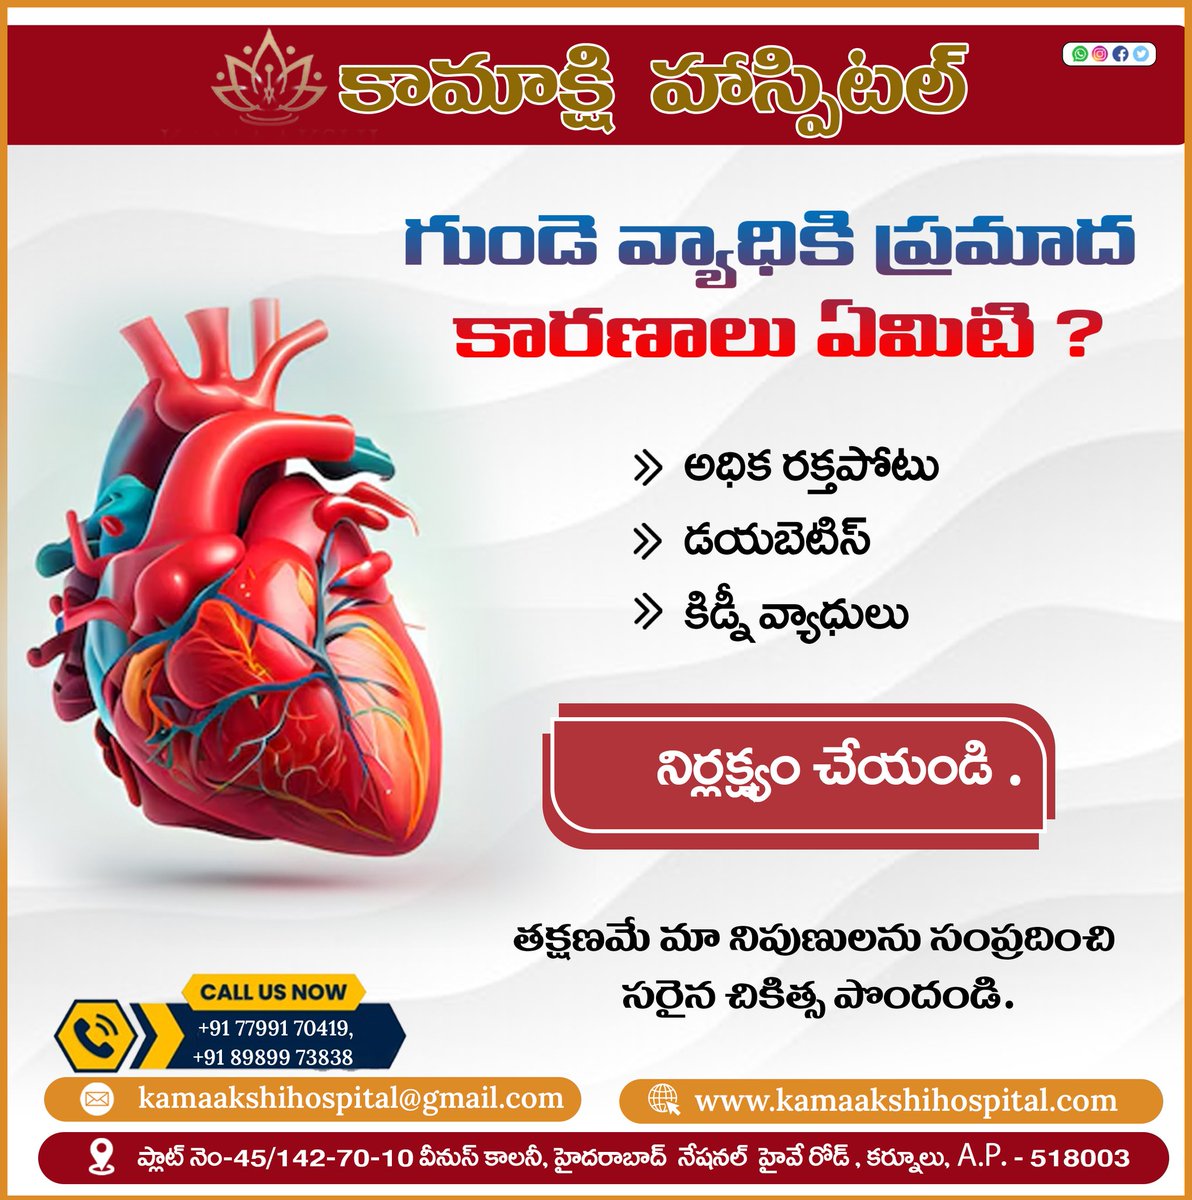 𝐖𝐡𝐚𝐭 𝐚𝐫𝐞 𝐭𝐡𝐞 𝐫𝐢𝐬𝐤 𝐟𝐚𝐜𝐭𝐨𝐫𝐬 𝐟𝐨𝐫 𝐡𝐞𝐚𝐫𝐭 𝐝𝐢𝐬𝐞𝐚𝐬𝐞?
𝐡𝐢𝐠𝐡 𝐛𝐥𝐨𝐨𝐝 𝐩𝐫𝐞𝐬𝐬𝐮𝐫𝐞
𝐃𝐢𝐚𝐛𝐞𝐭𝐞𝐬
𝐊𝐢𝐝𝐧𝐞𝐲 𝐝𝐢𝐬𝐞𝐚𝐬𝐞
📞: +91 7799170419
#heart #HeartDisease #highbloodpressure #diabetes #kidneydisease #besthospital #kamakshihospitals